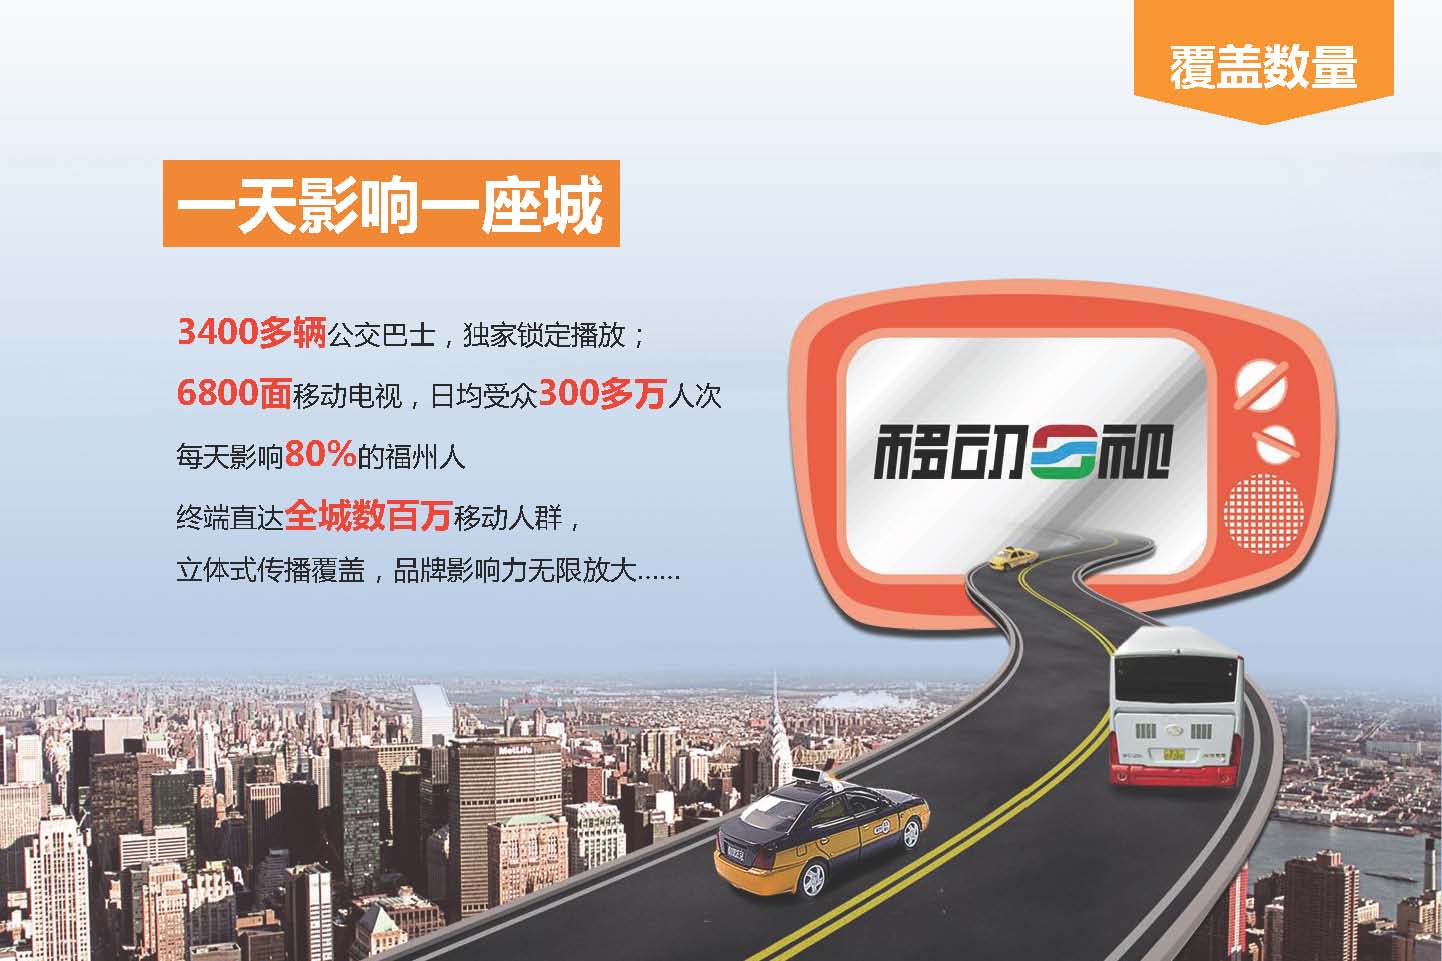 2014年福州公交车移动电视媒体推介_页面_3.jpg